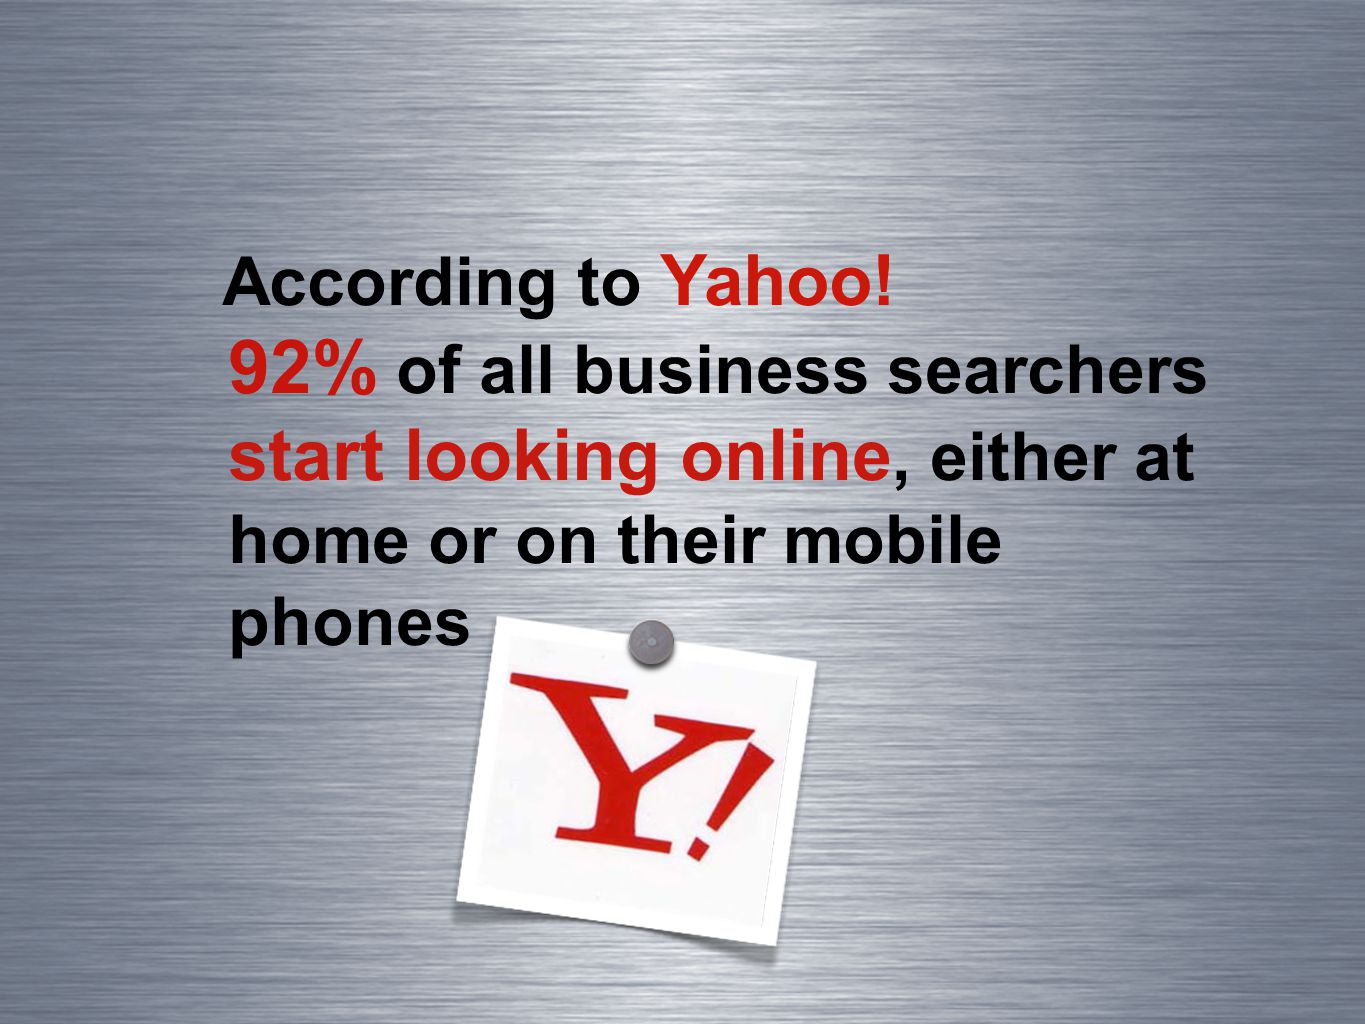 According to Yahoo.